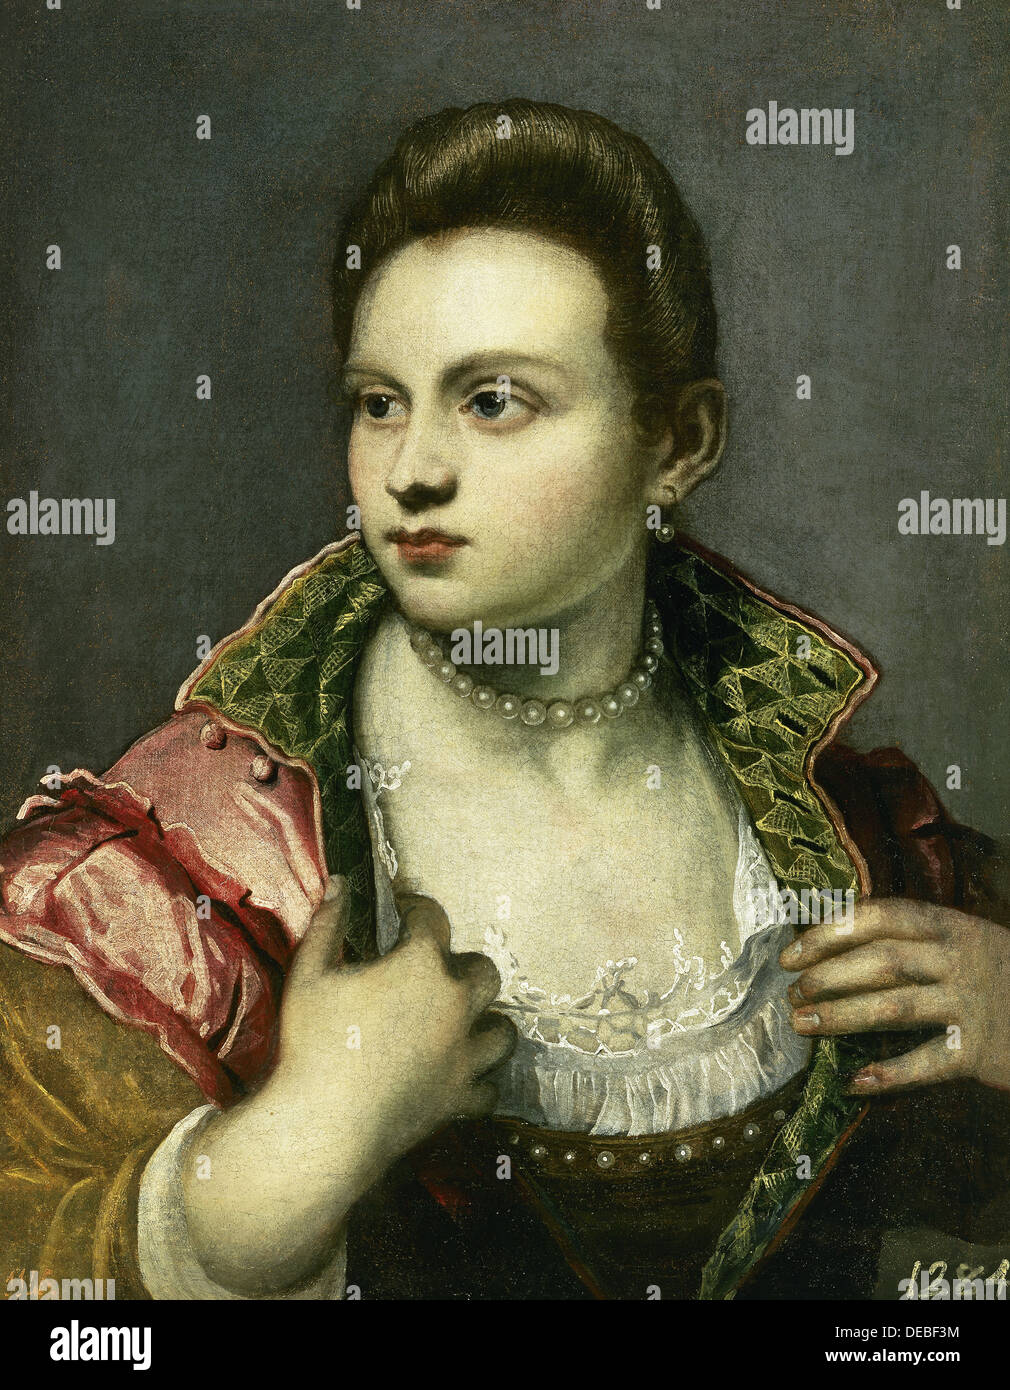 Tintoretto (1518-1594). Pittore italiano. Marietta Robusti (1560?-1590), soprannominato "la Tintoretta'. Olio su tela. Il Museo del Prado. Foto Stock